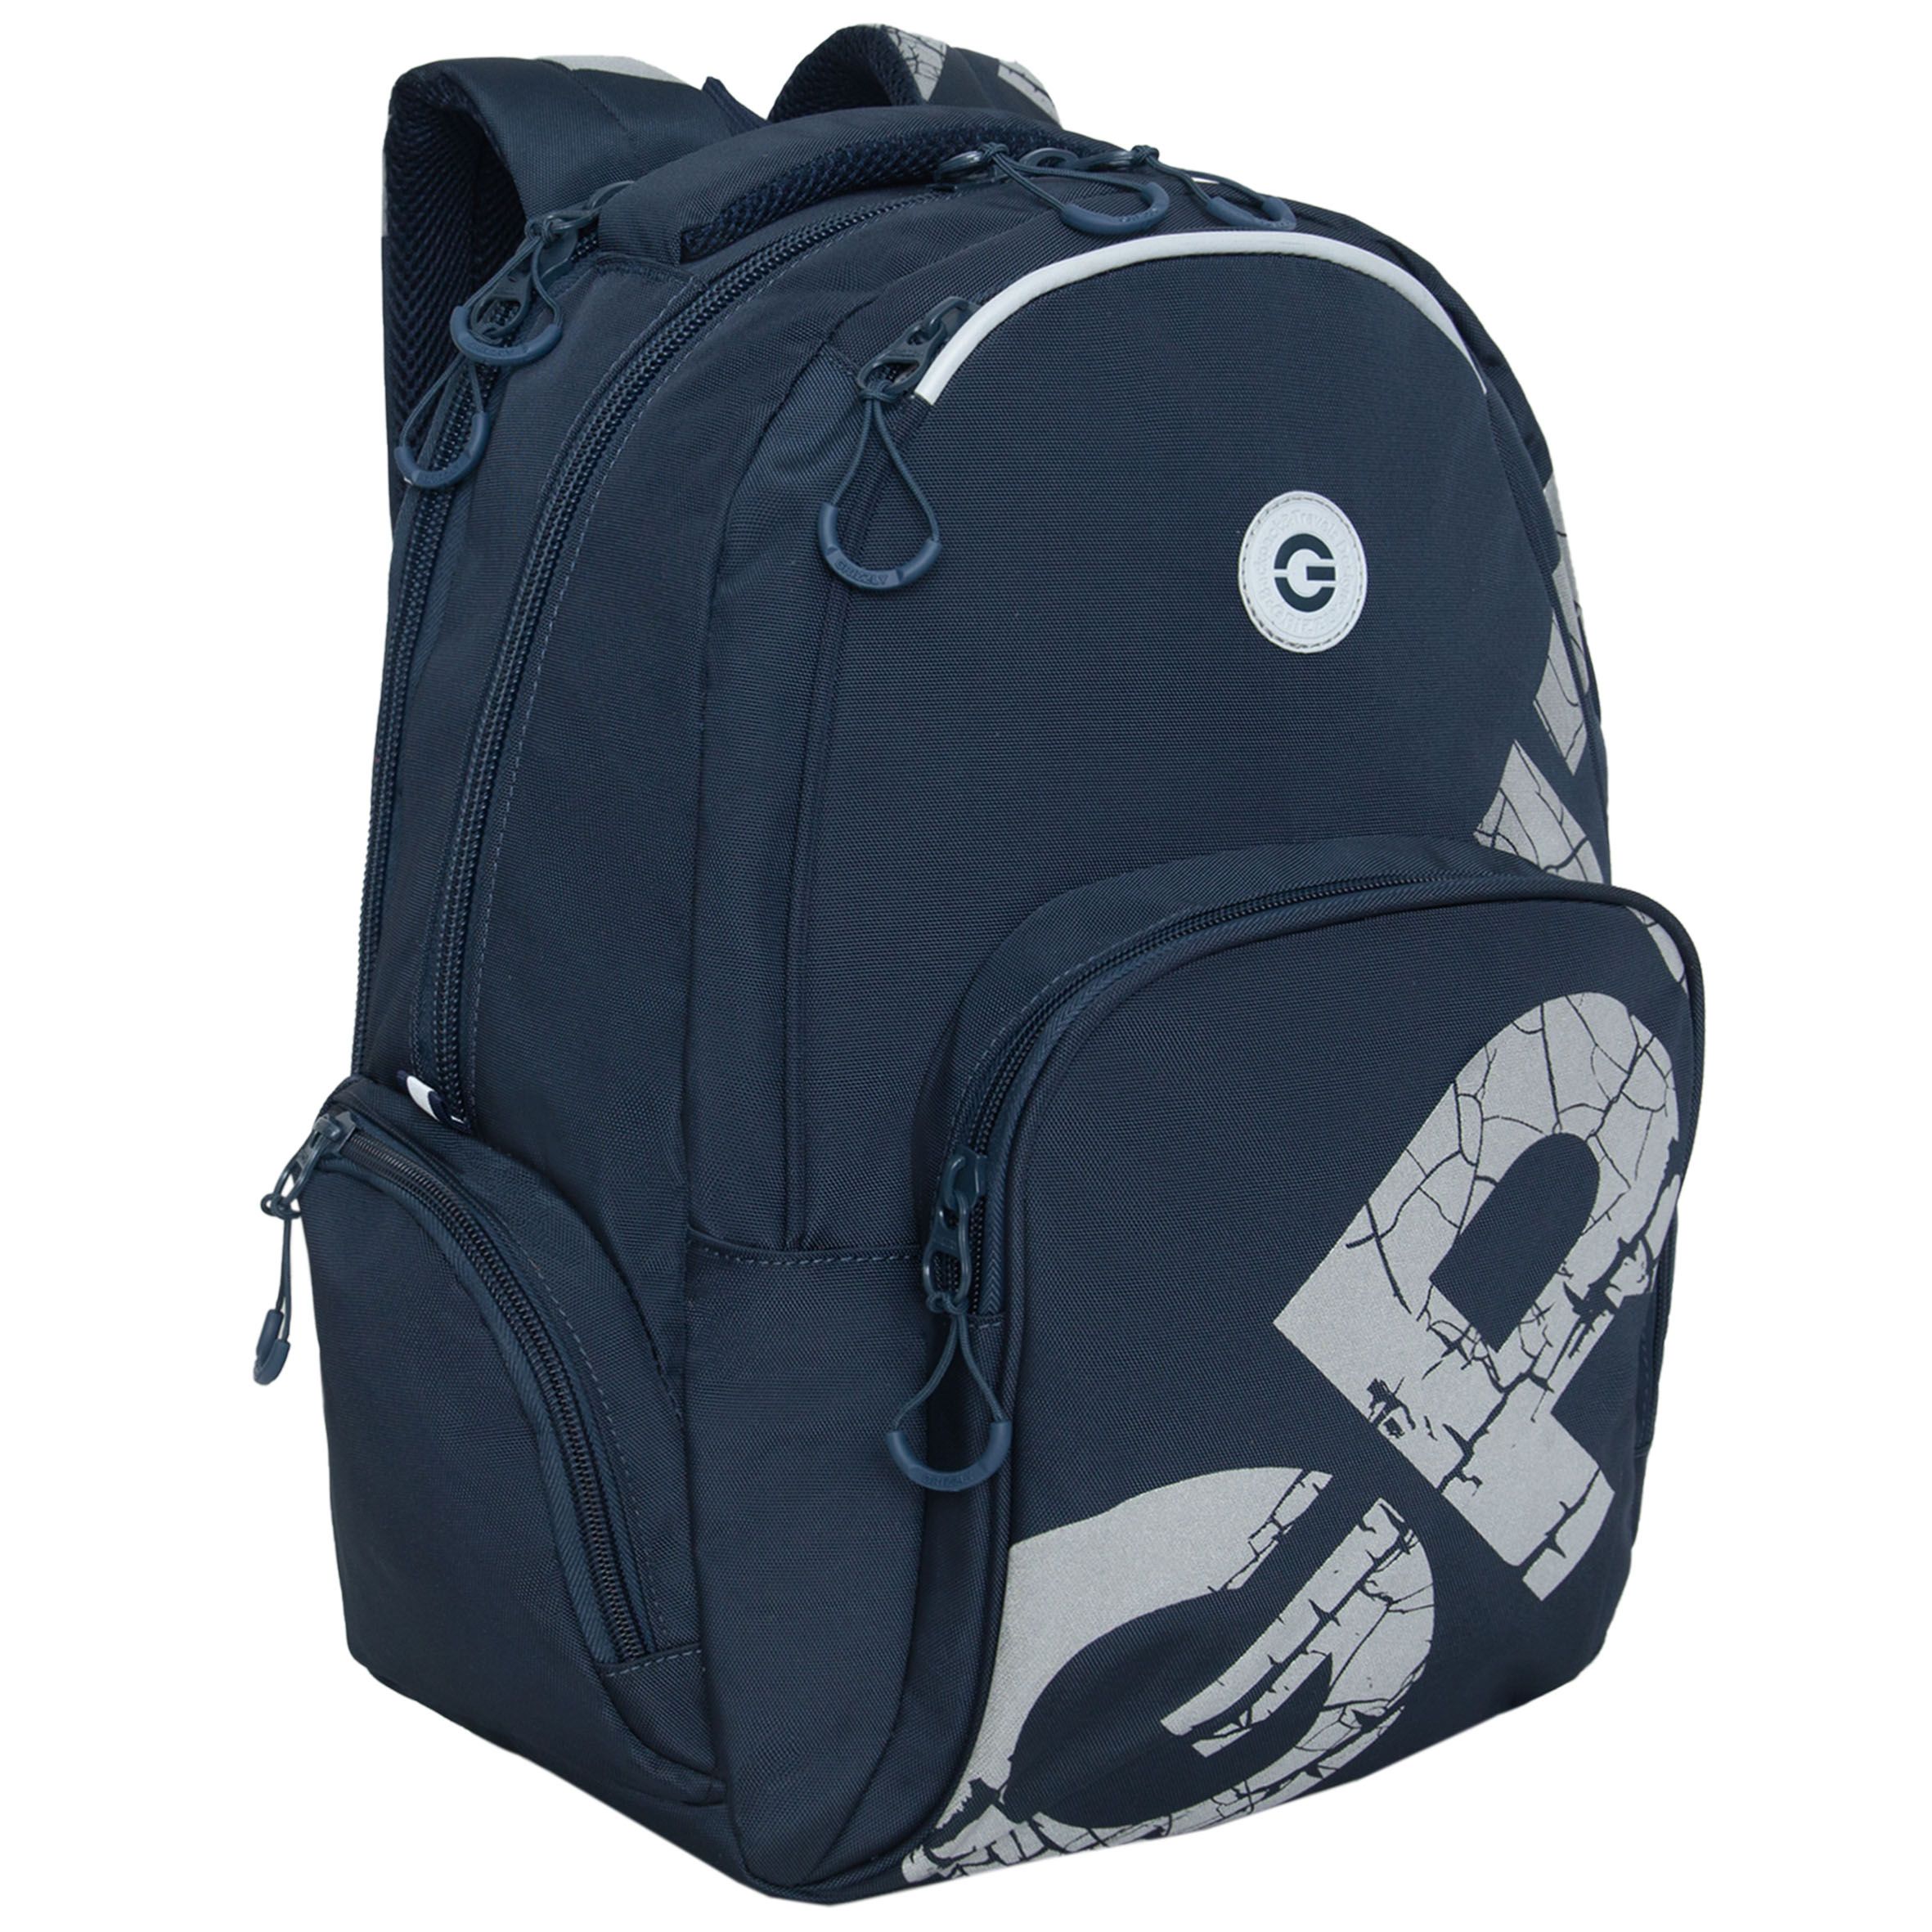 Рюкзак GRIZZLY RU-433-1 молодежный модный для подростков темно-синий рюкзак молодежный из текстиля на молнии наружный карман синий